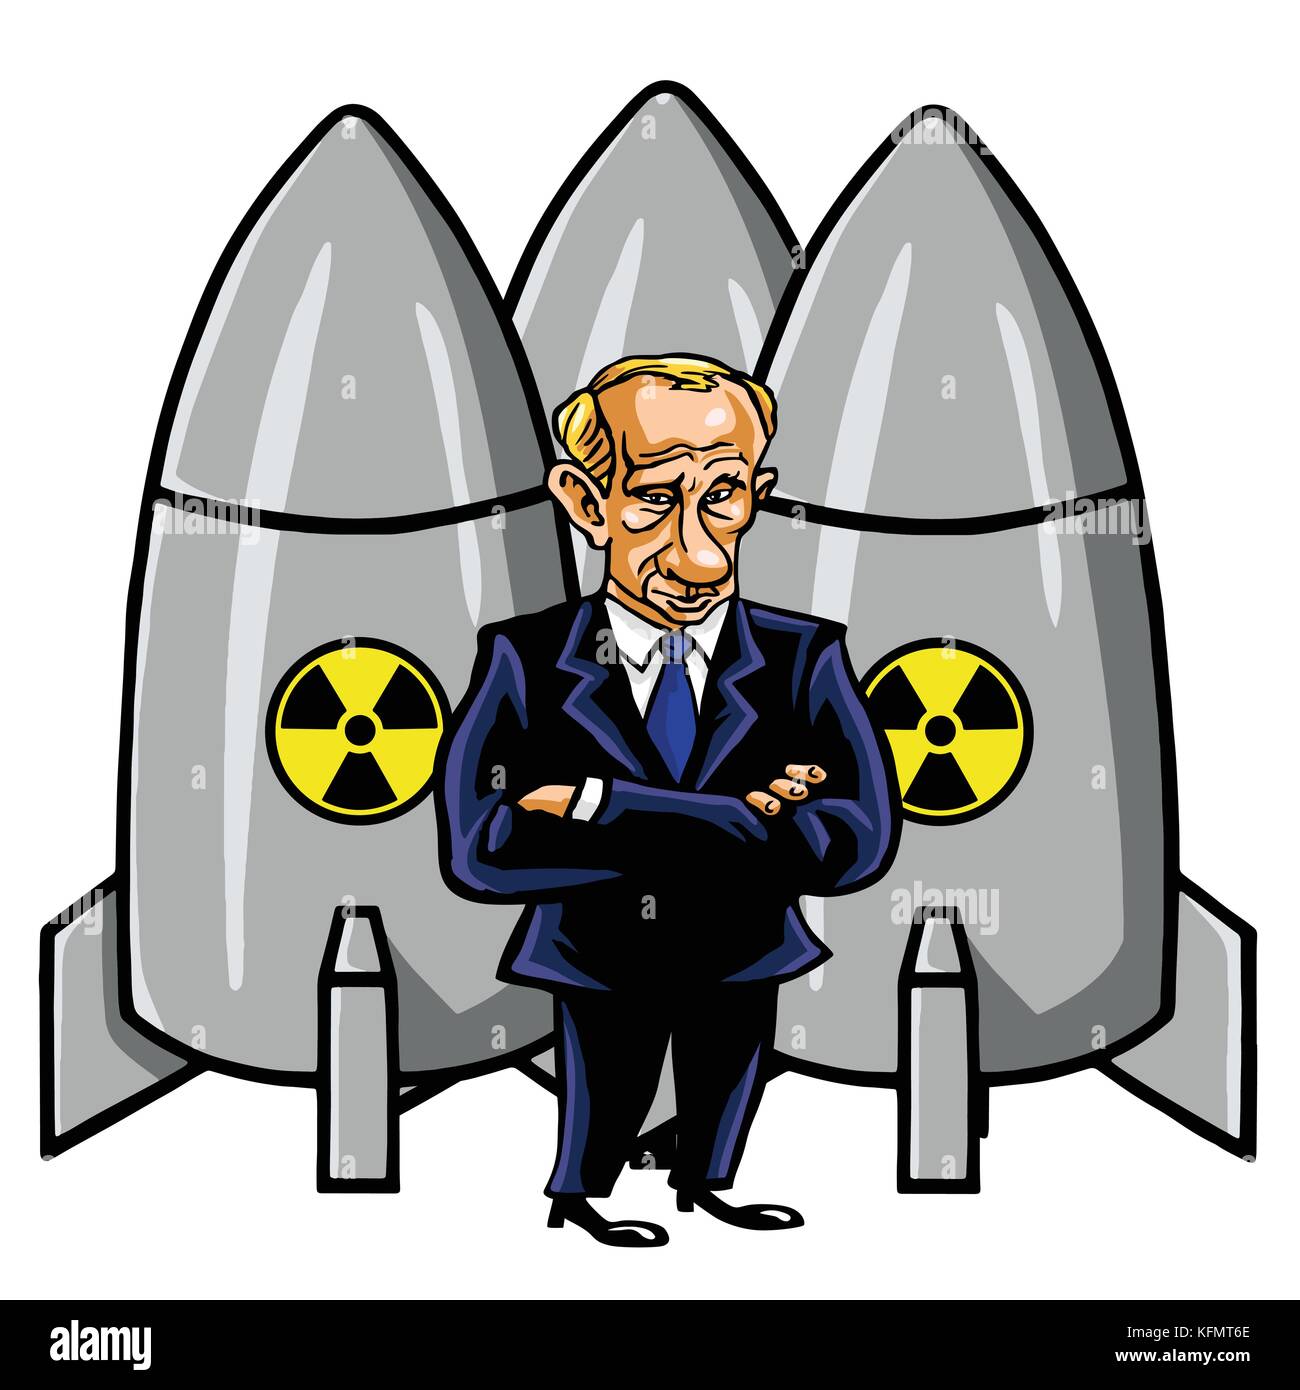 Vladimir Poutine caricature de missiles nucléaires. vector illustration. octobre 31, 2017 Illustration de Vecteur